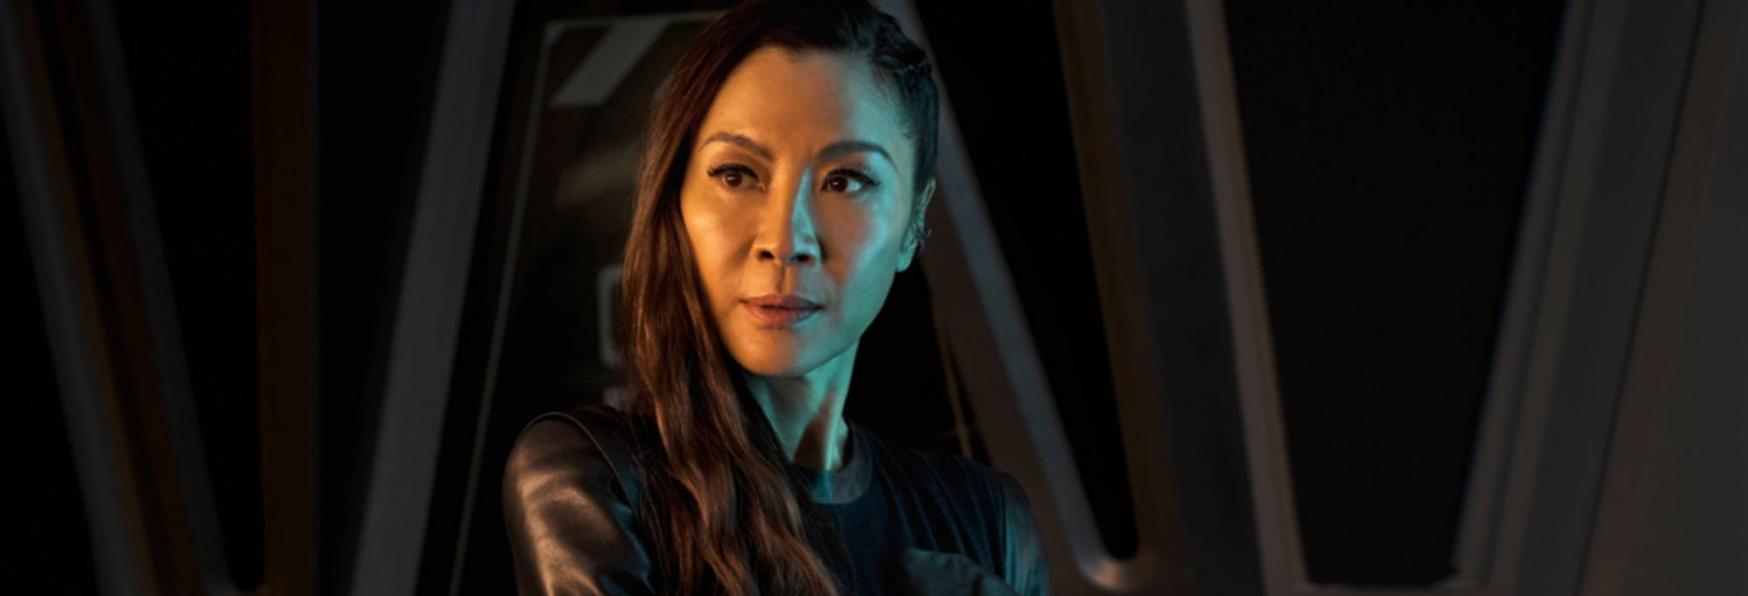 Star Trek: Sezione 31 - Gli Ultimi Aggiornamenti sulla Serie TV Spin-off con Michelle Yeoh